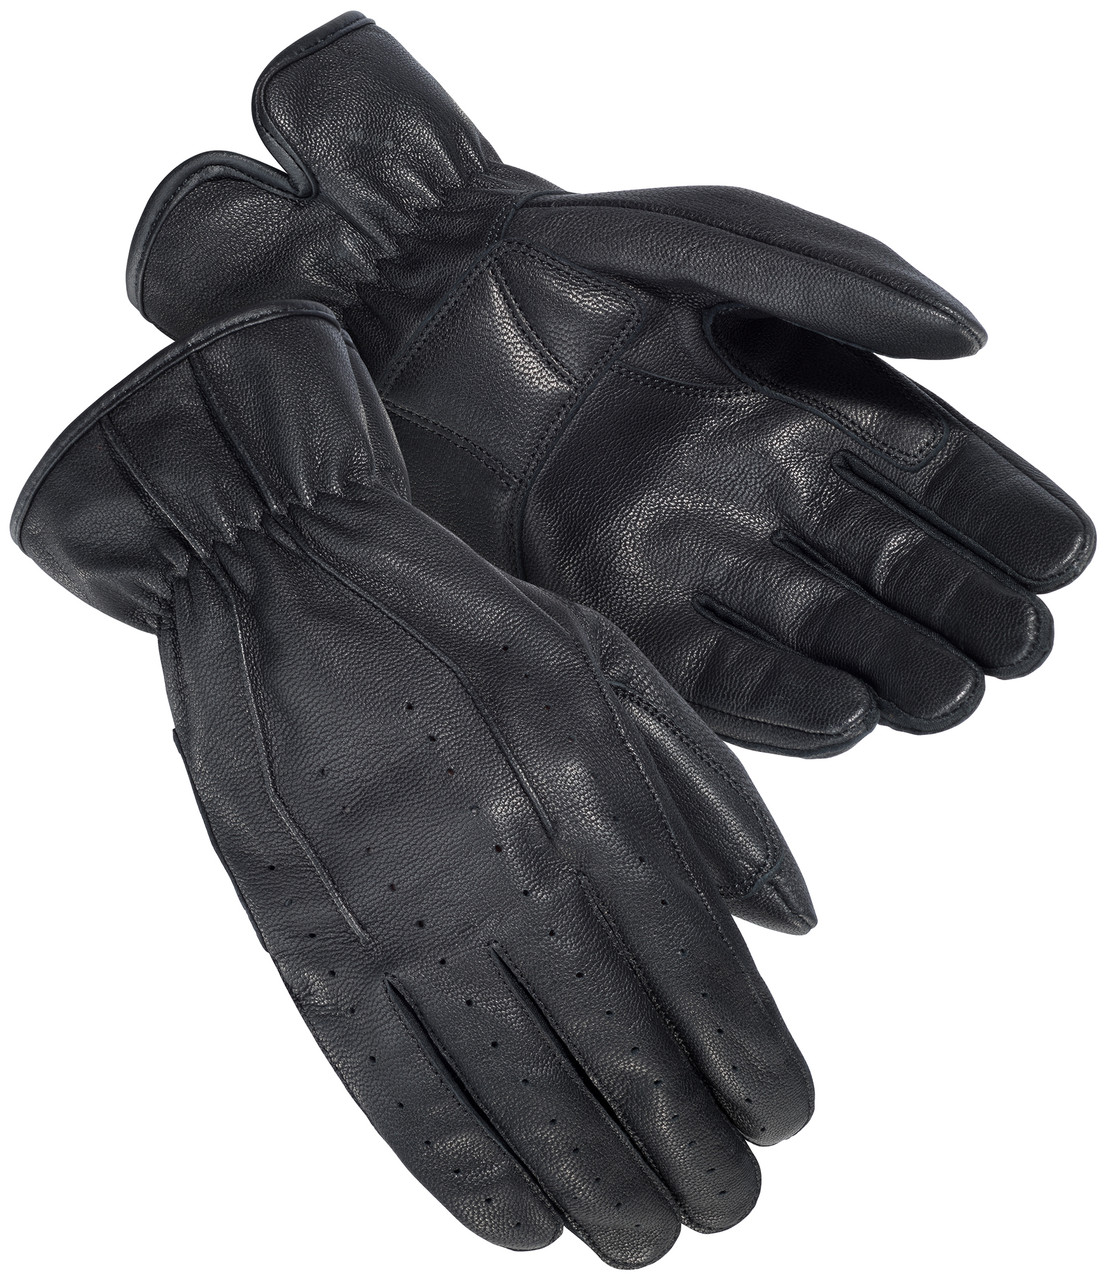 Tourmaster Select Fingerless 2.0 Gloves Black